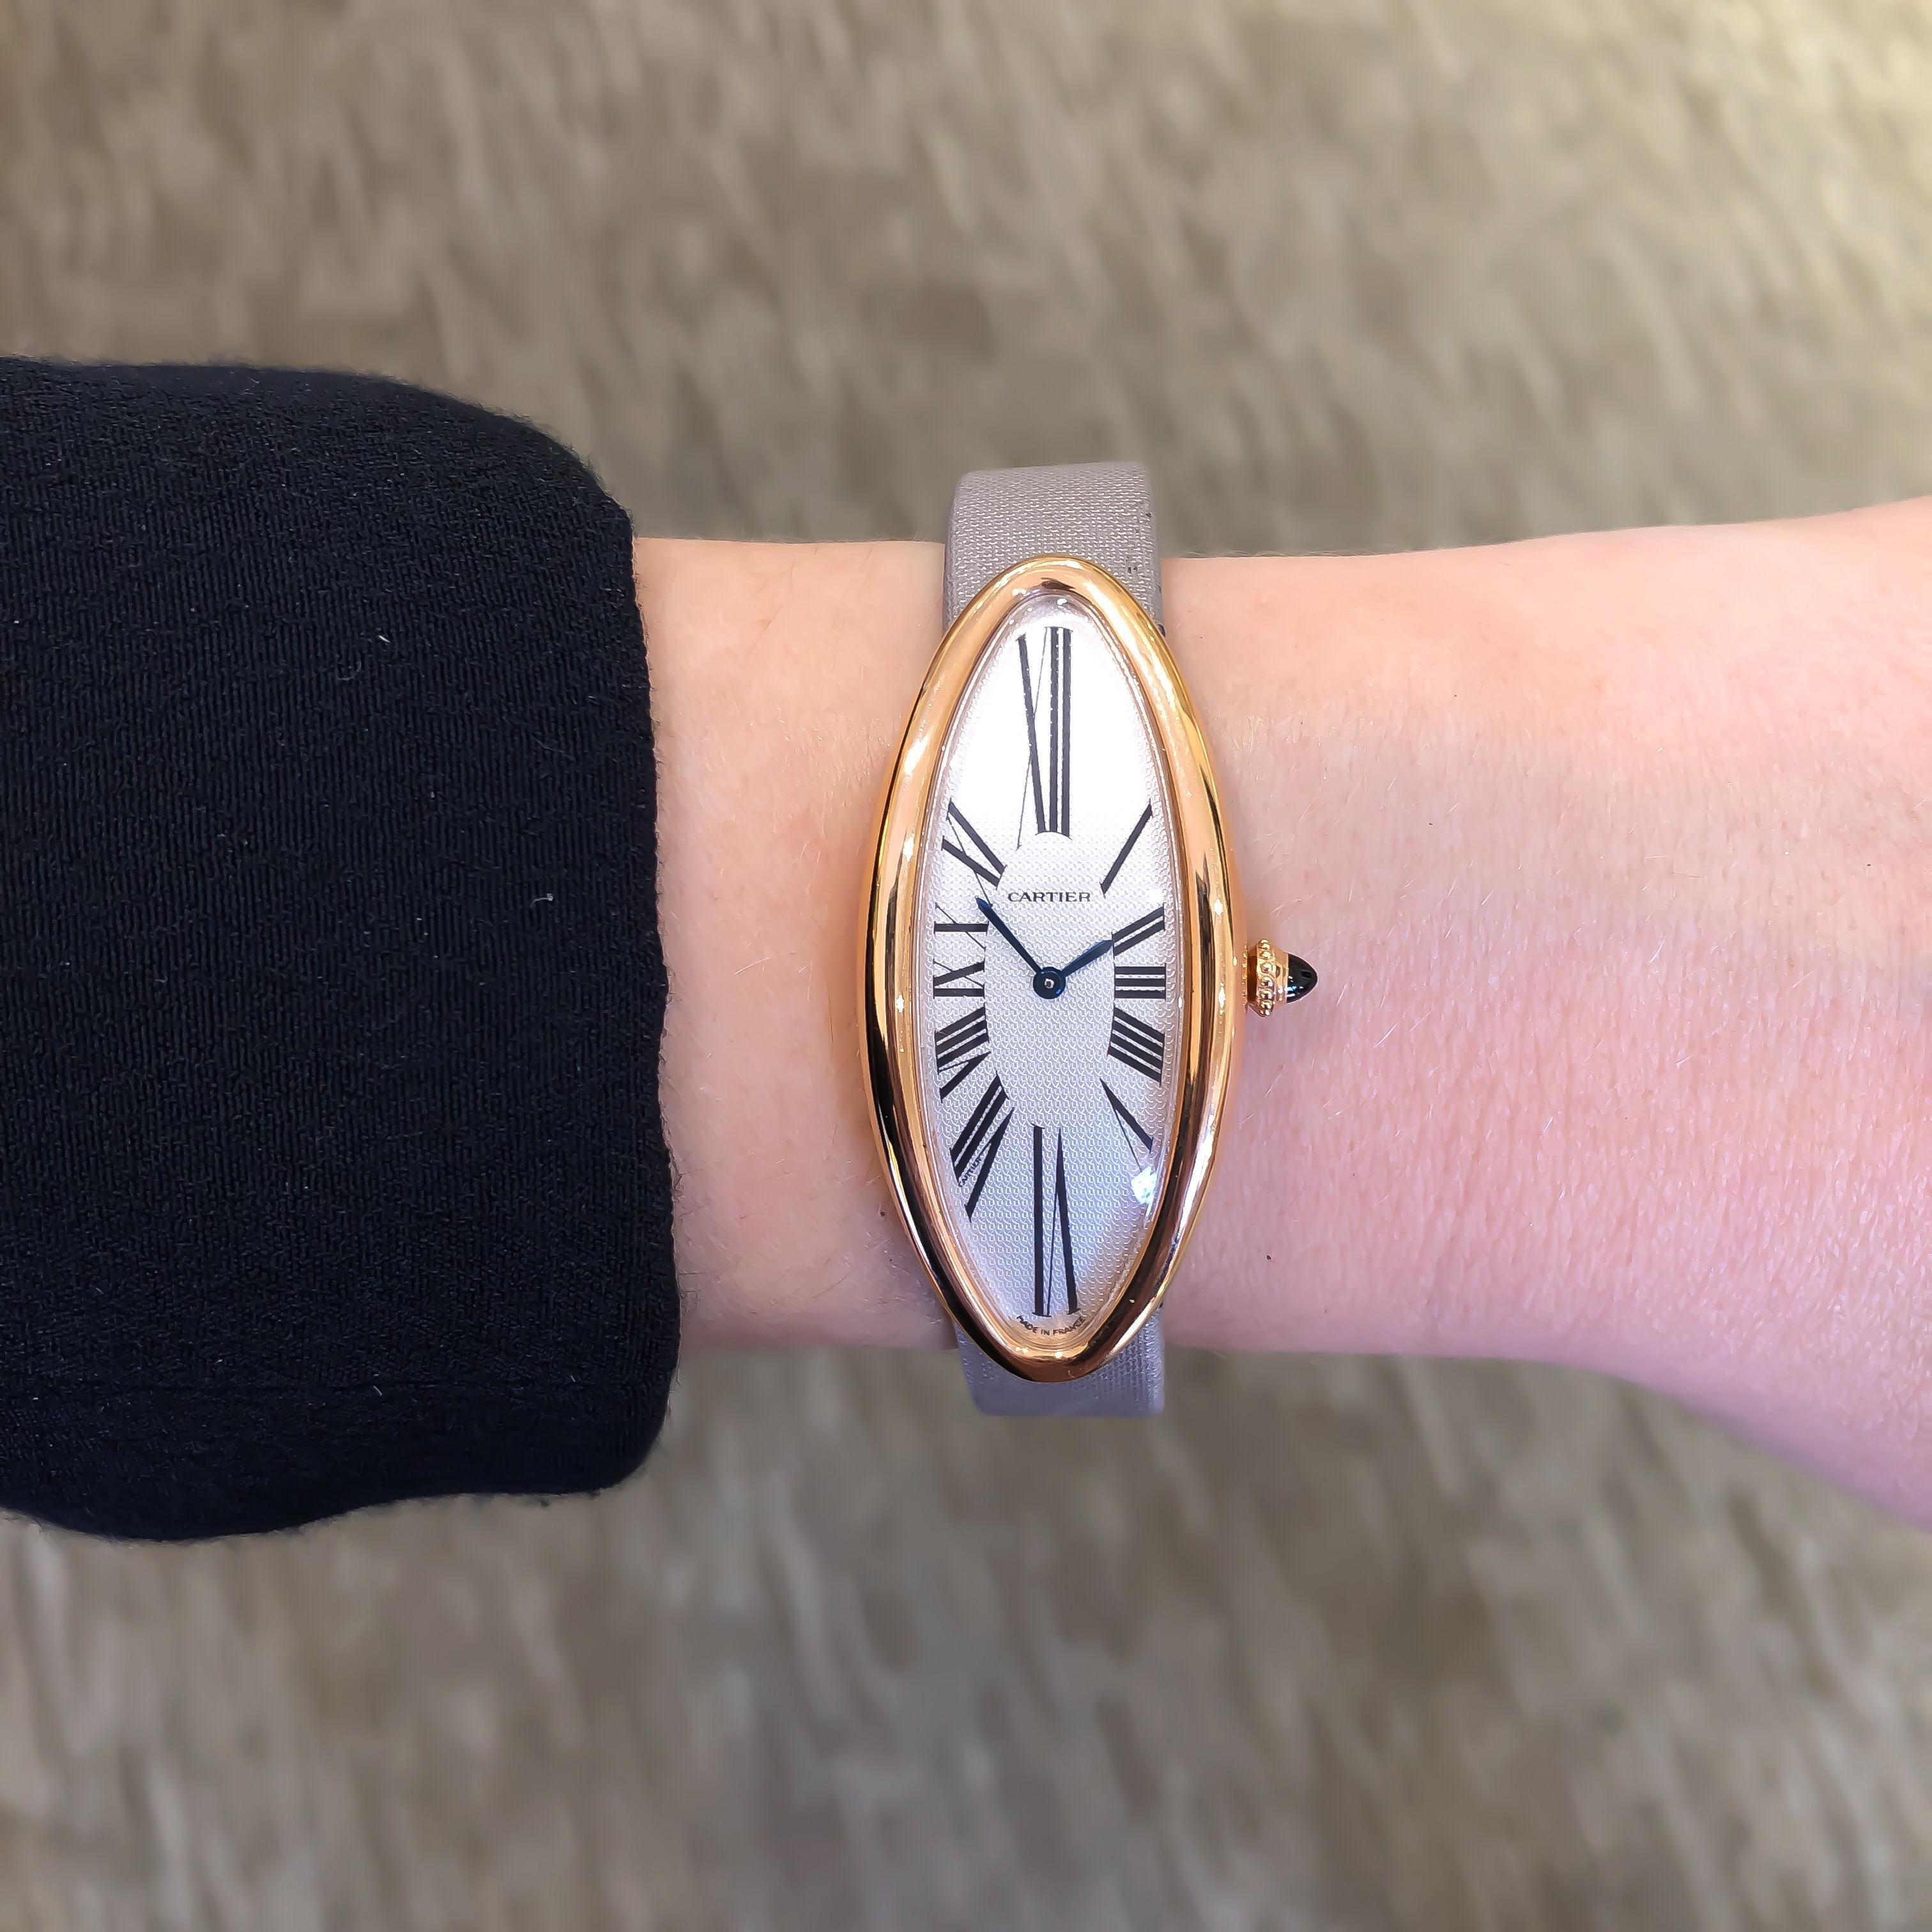 Cartier Women's Baignoire Allongee 18 Karat Rose Gold Mechanical Watch 1